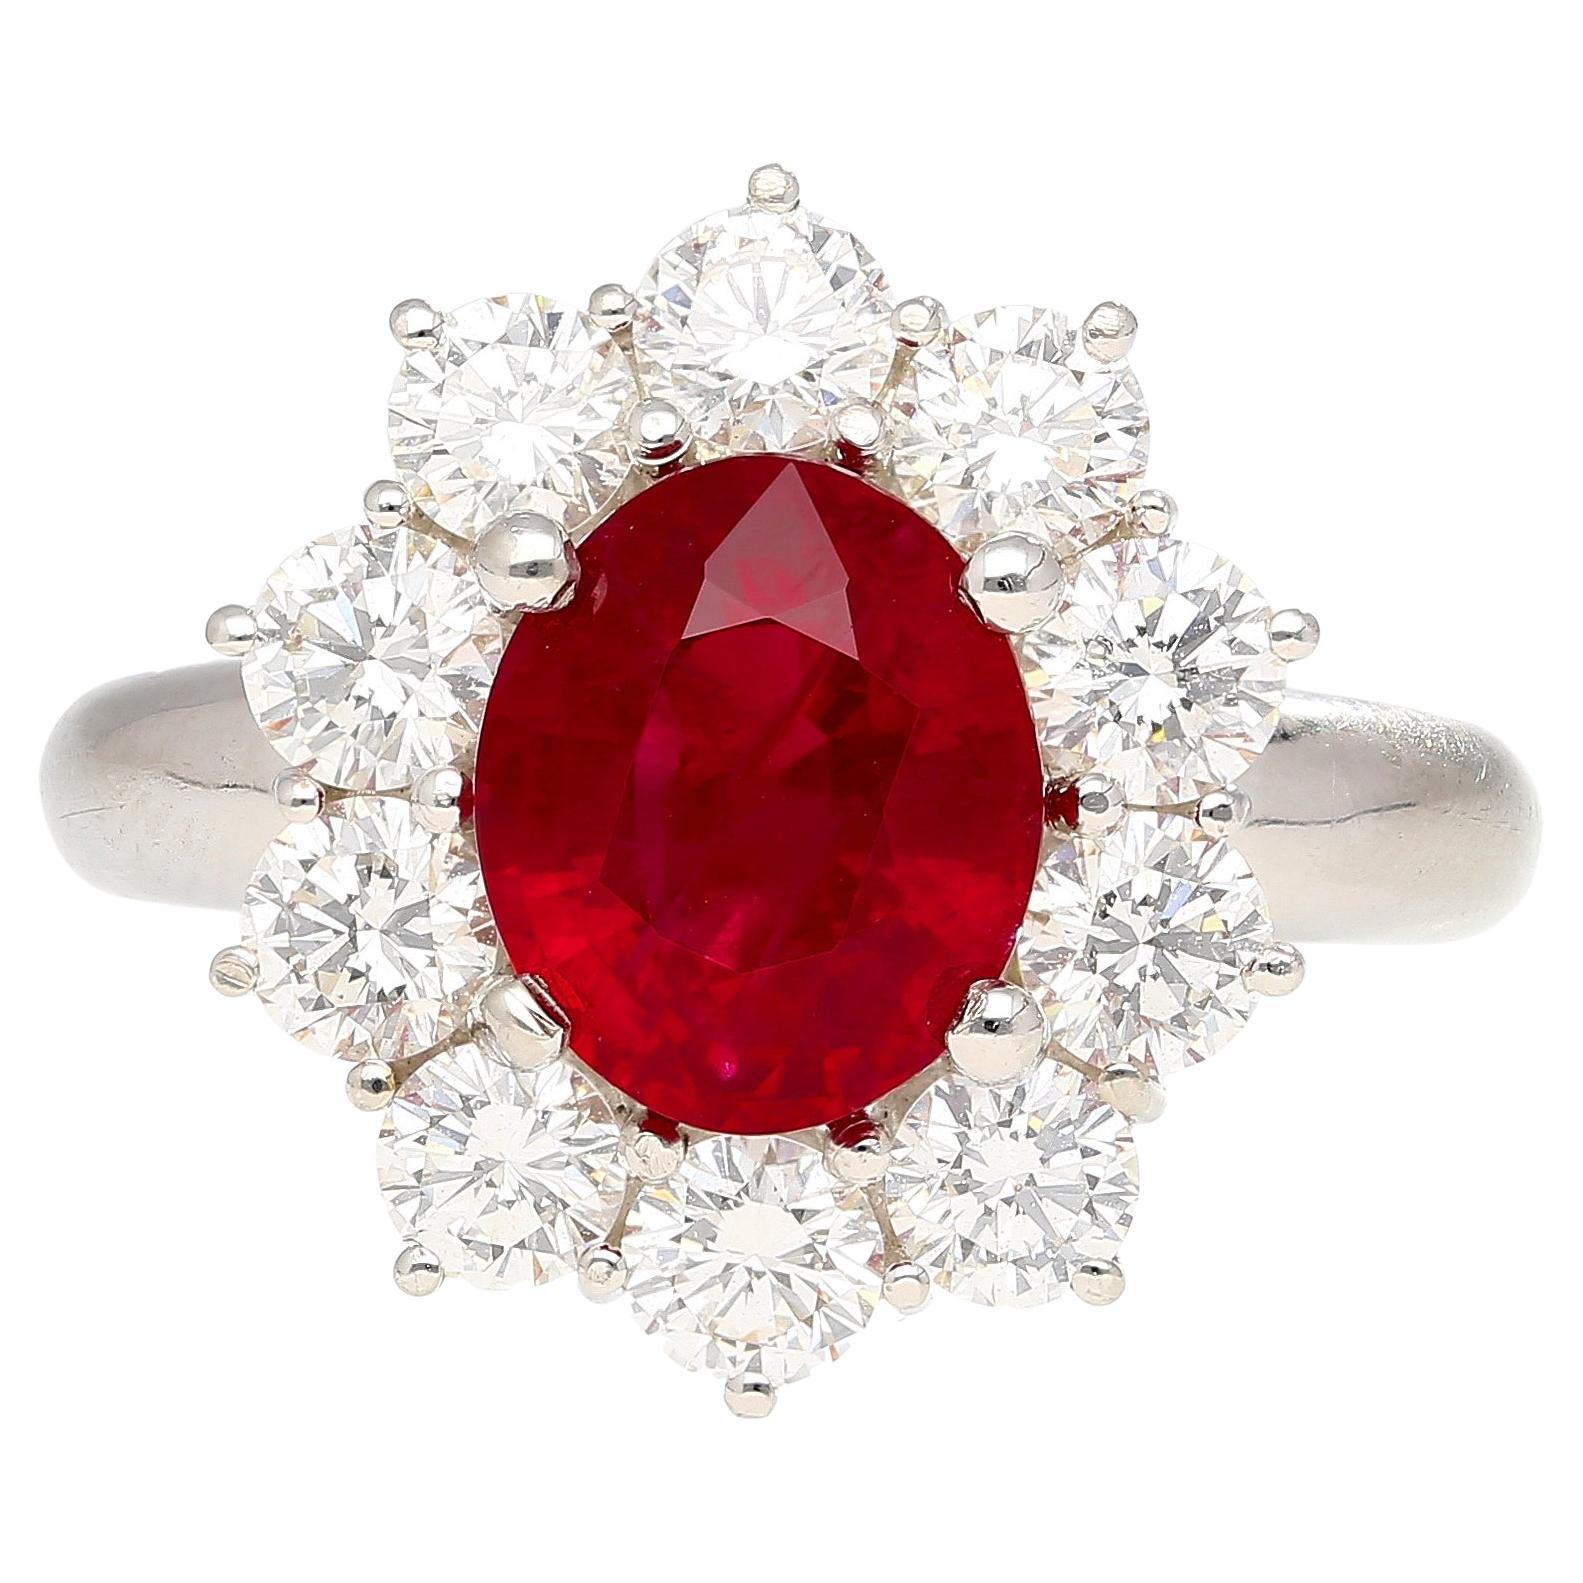 3 Karat Vivid Red Pigeons Blood Burma Ruby Ring mit Diamanten in Platin & Gold